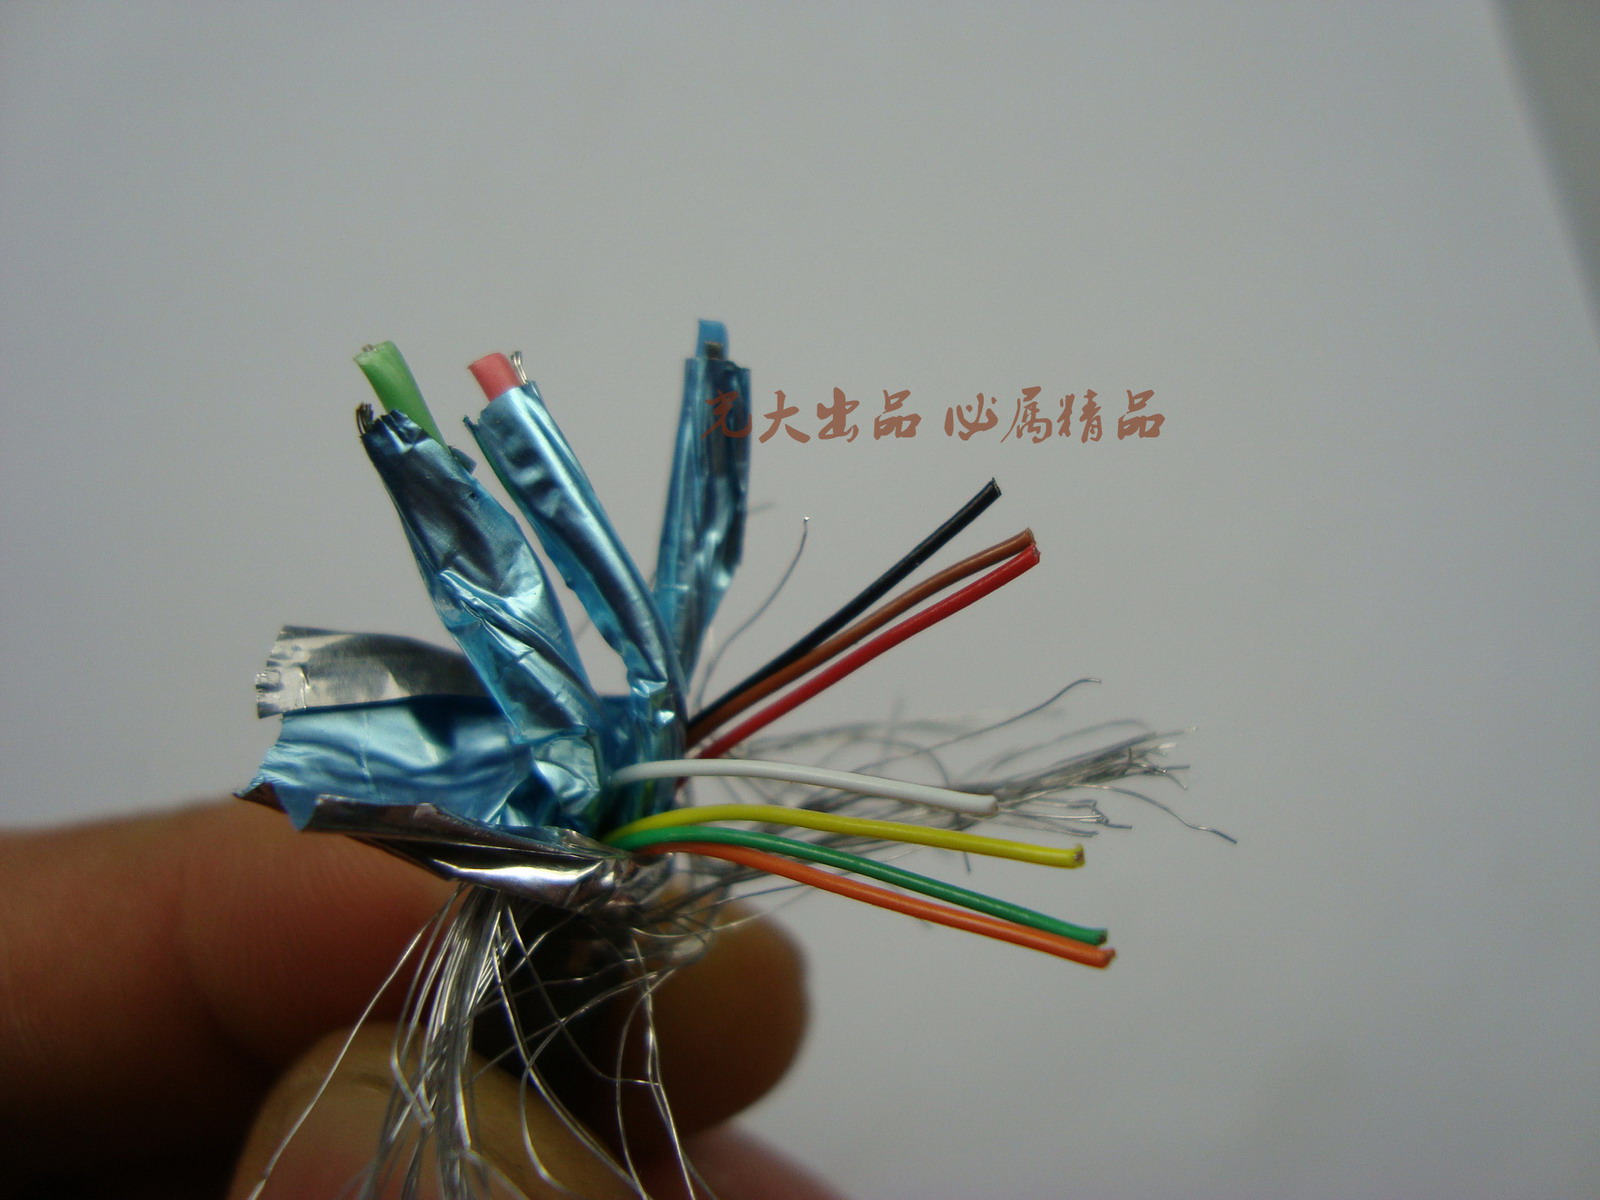 原装VGA线 1.5米1.8米等 双磁环3+6 3+9 品牌显示器RGB信号线